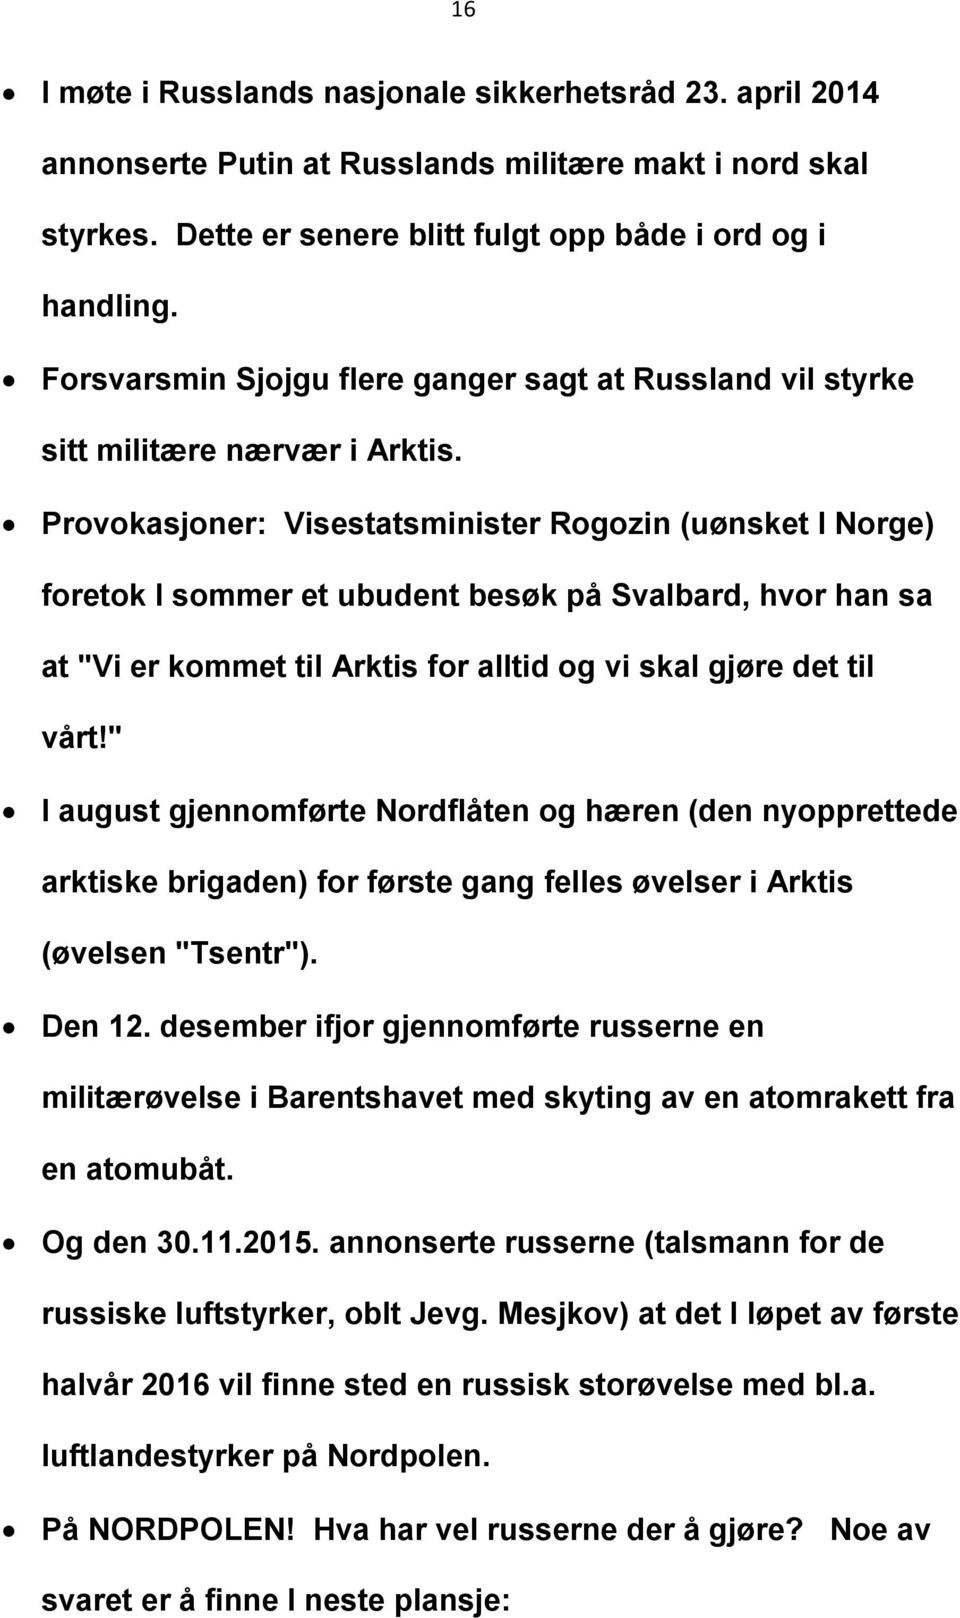 Provokasjoner: Visestatsminister Rogozin (uønsket I Norge) foretok I sommer et ubudent besøk på Svalbard, hvor han sa at "Vi er kommet til Arktis for alltid og vi skal gjøre det til vårt!